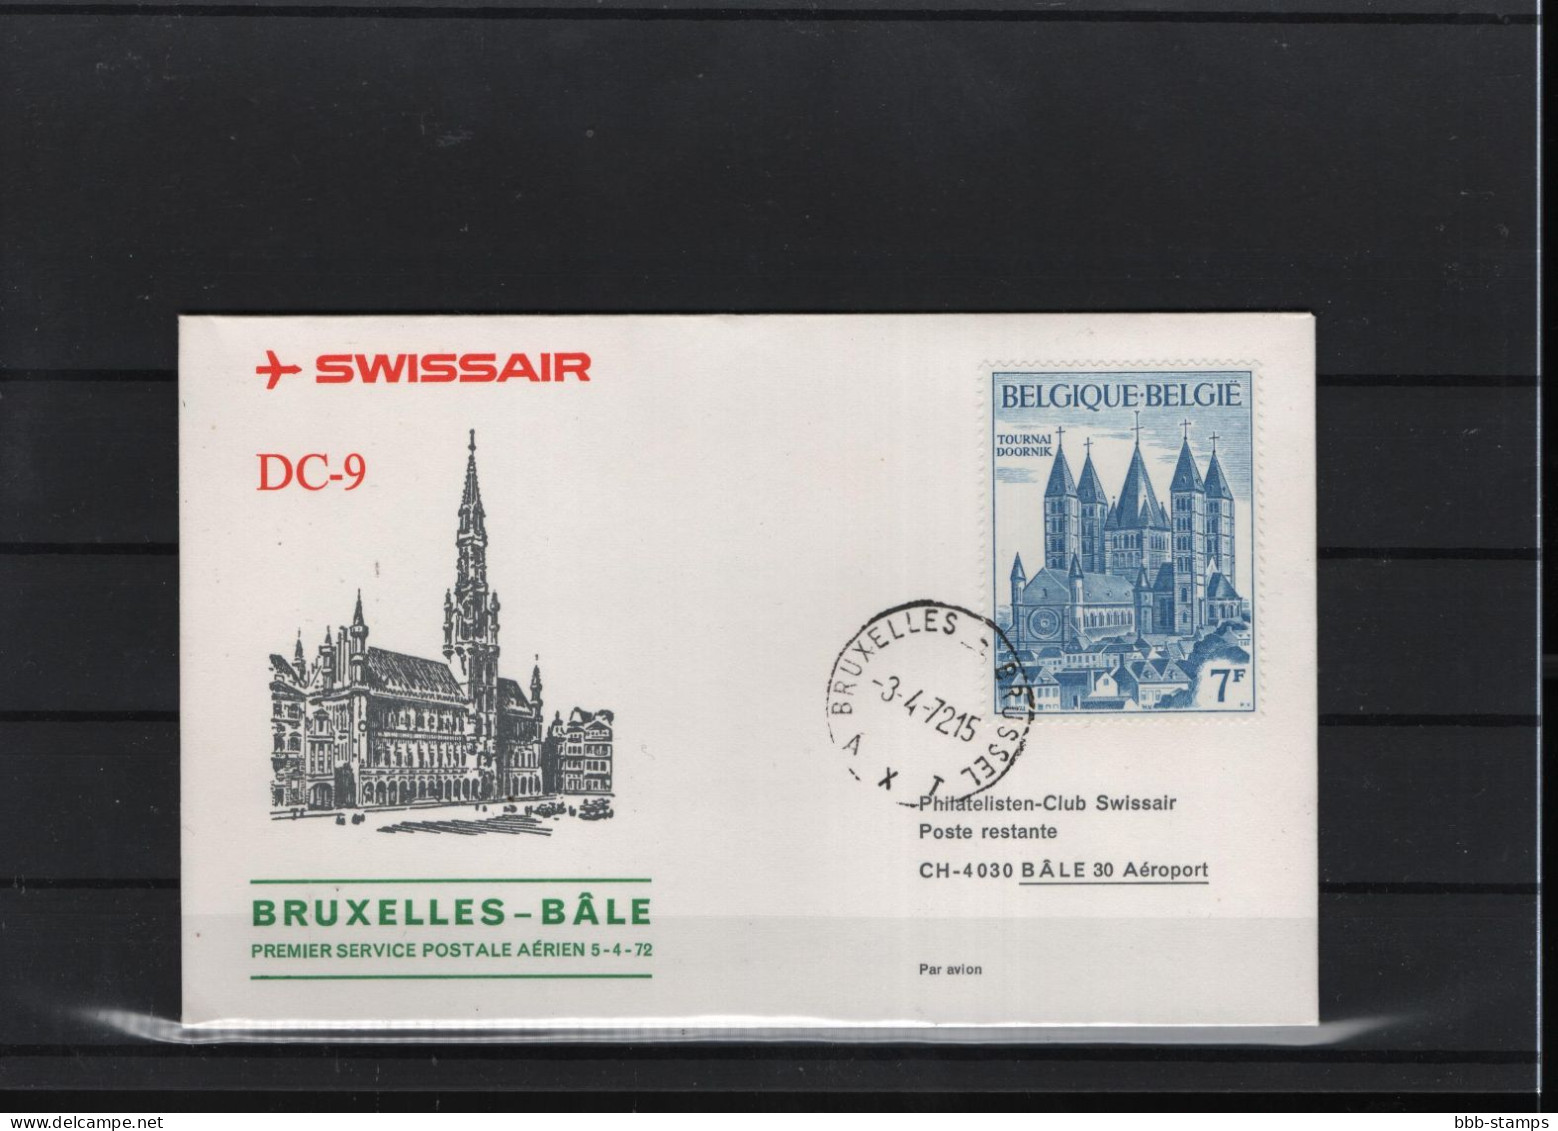 Schweiz Luftpost FFC Swissair  3.4.1972 Brussel - Basel - Erst- U. Sonderflugbriefe